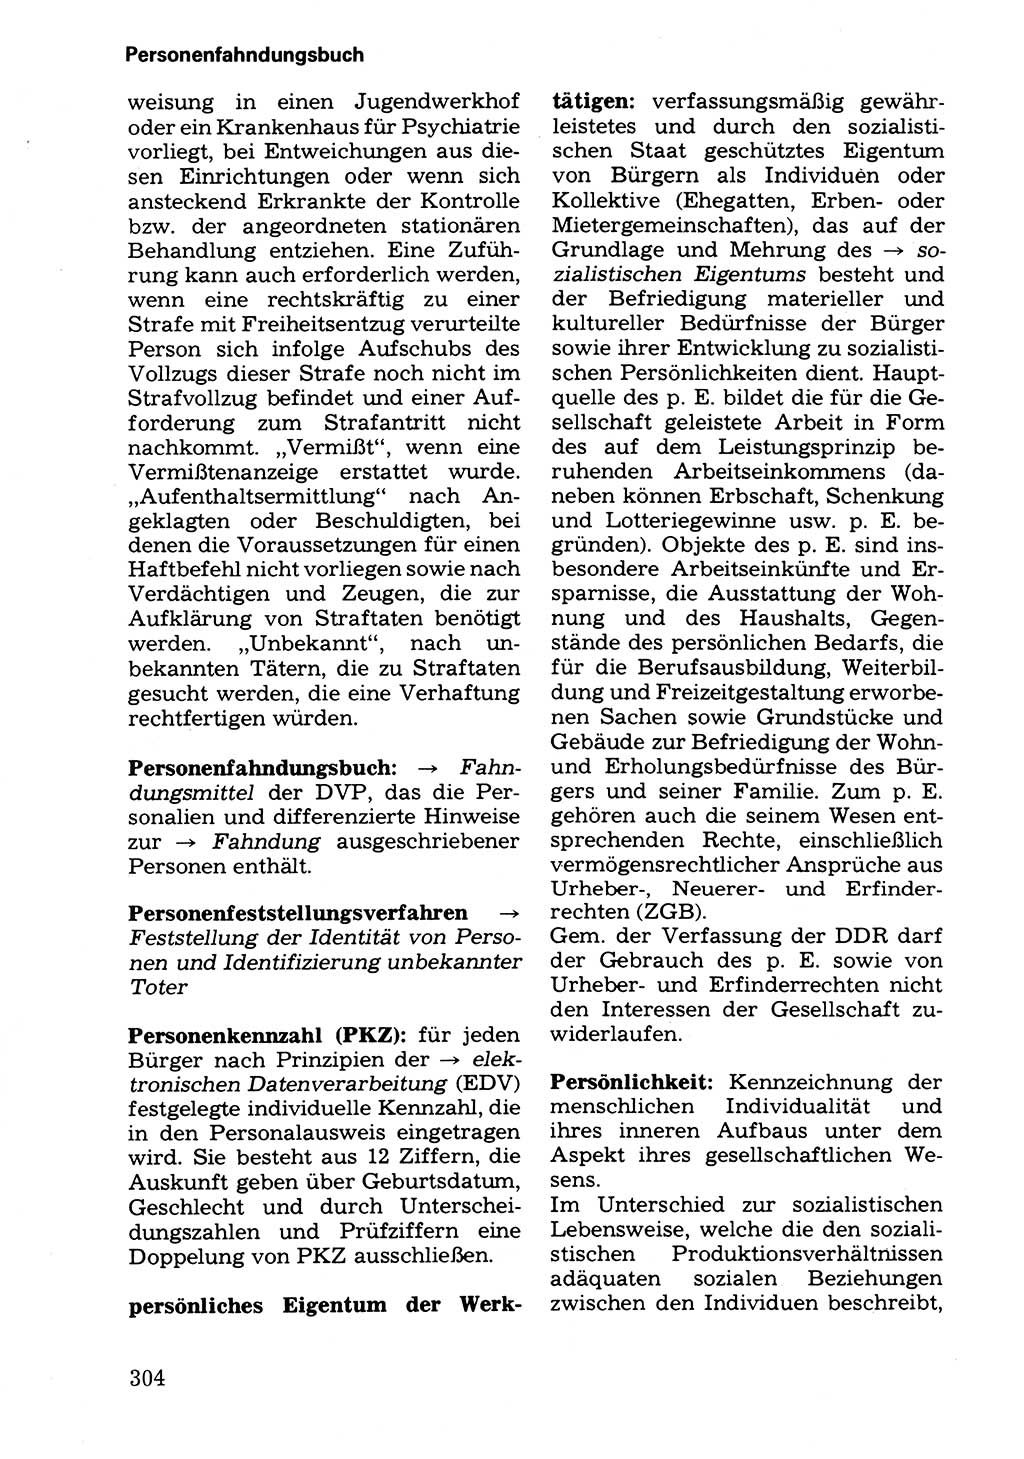 Wörterbuch der sozialistischen Kriminalistik [Deutsche Demokratische Republik (DDR)] 1981, Seite 304 (Wb. soz. Krim. DDR 1981, S. 304)